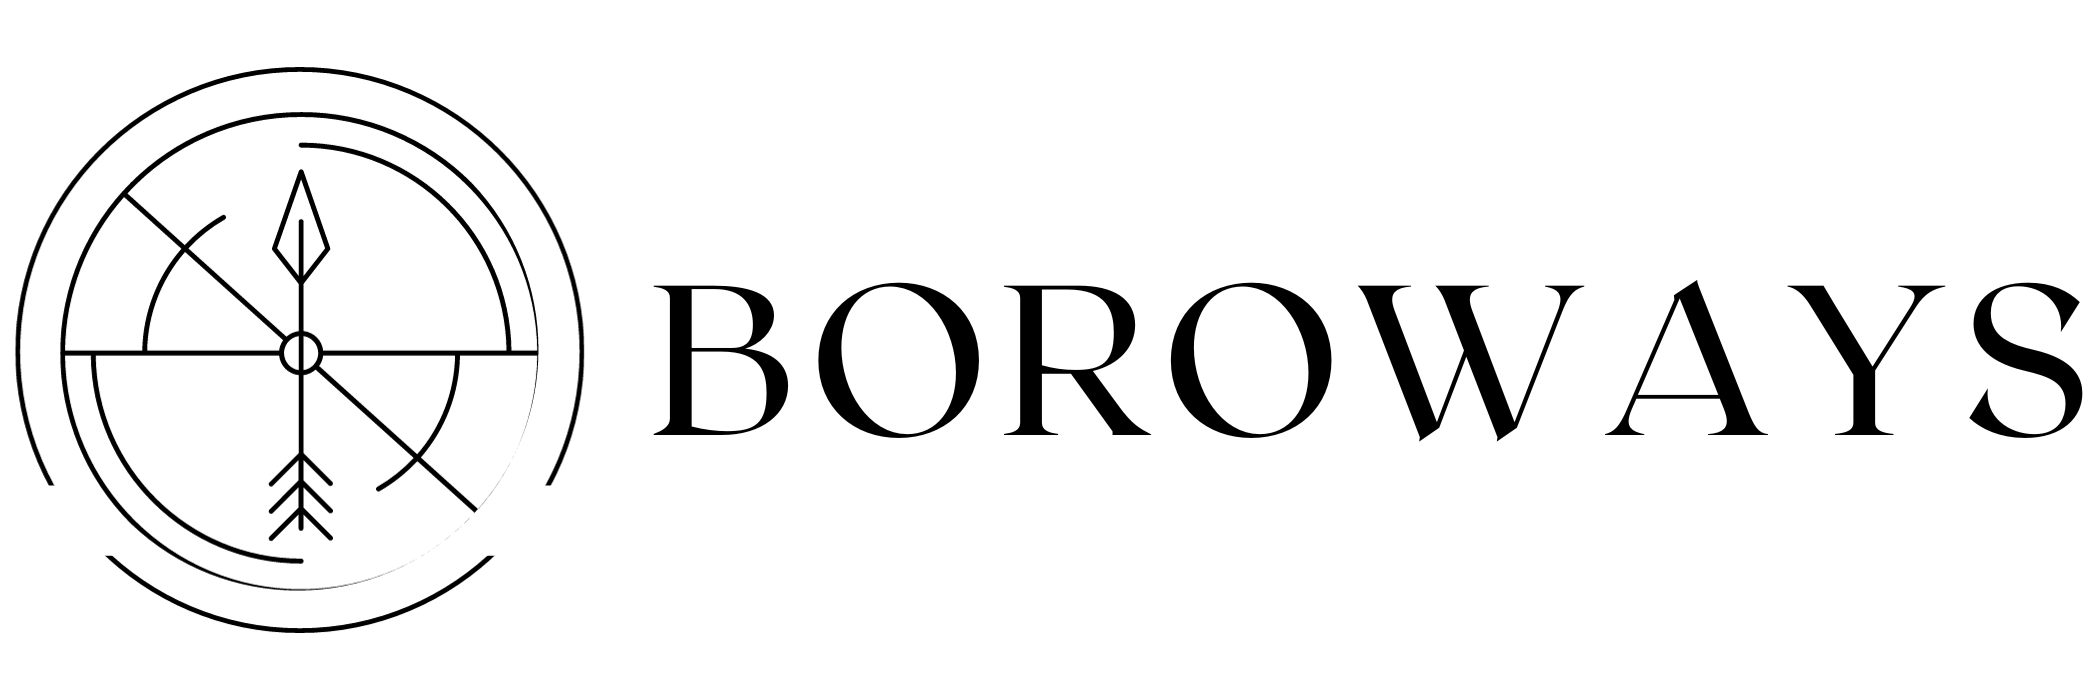 BoroWays - ES